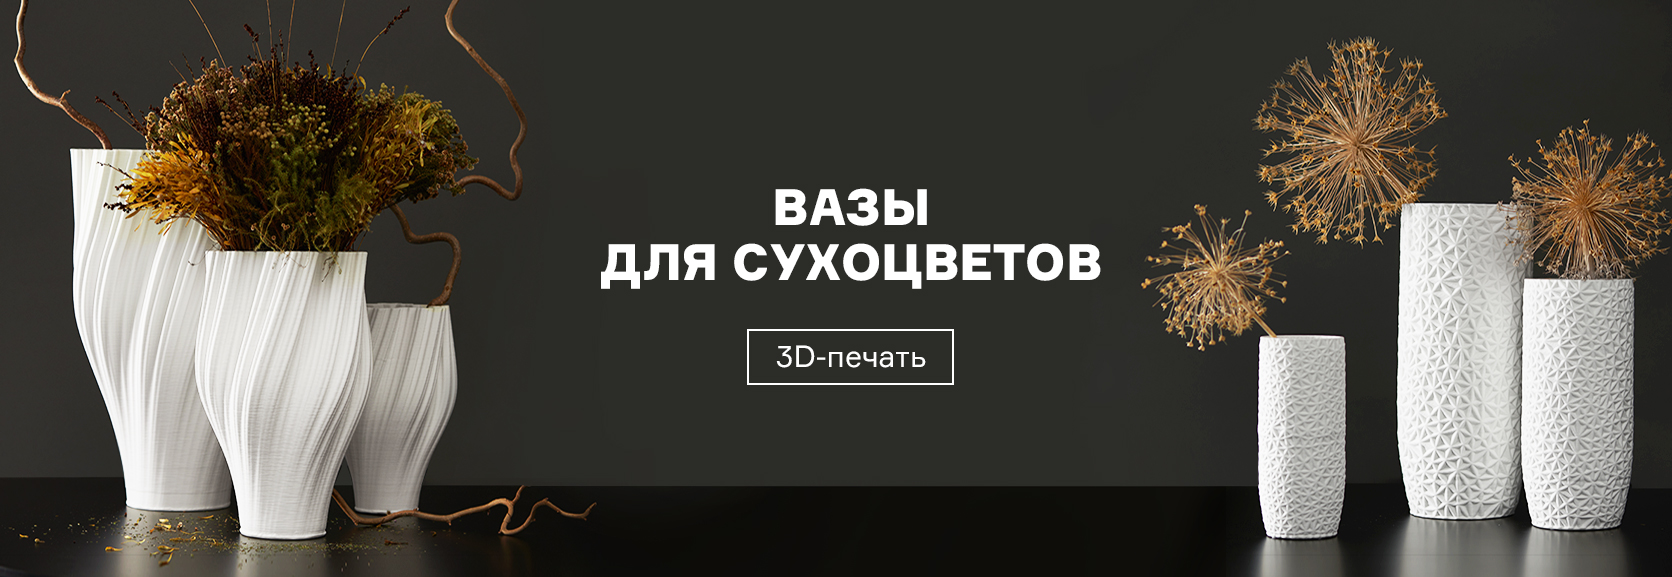 Интернет-магазин предметов интерьера Inrium.ru